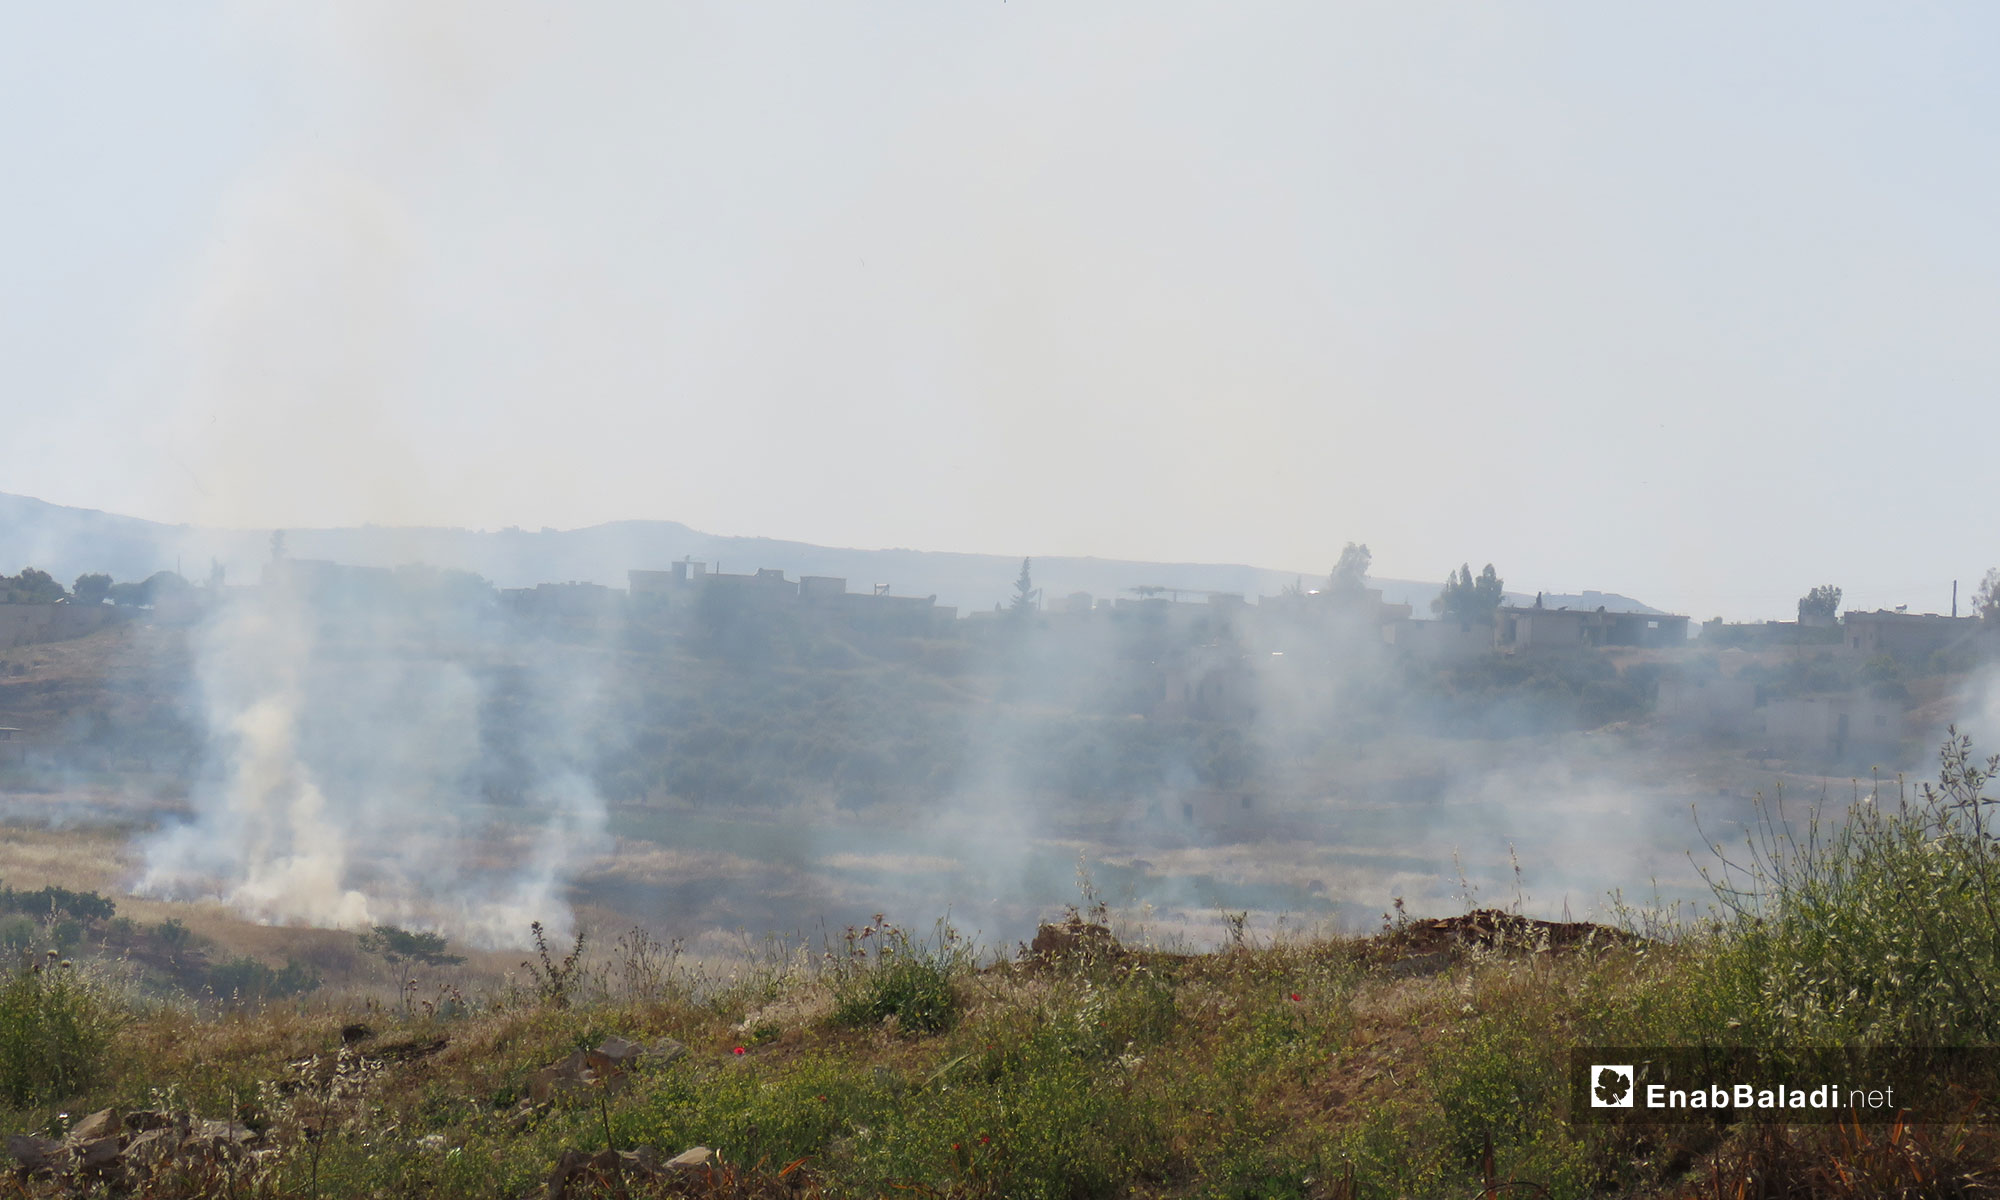 احتراق المحاصيل الزراعية في بلدة  ترملا جنوب ادلب بعد استهدافها براجمات الصواريخ - 14 من أيار 2019 (عنب بلدي)